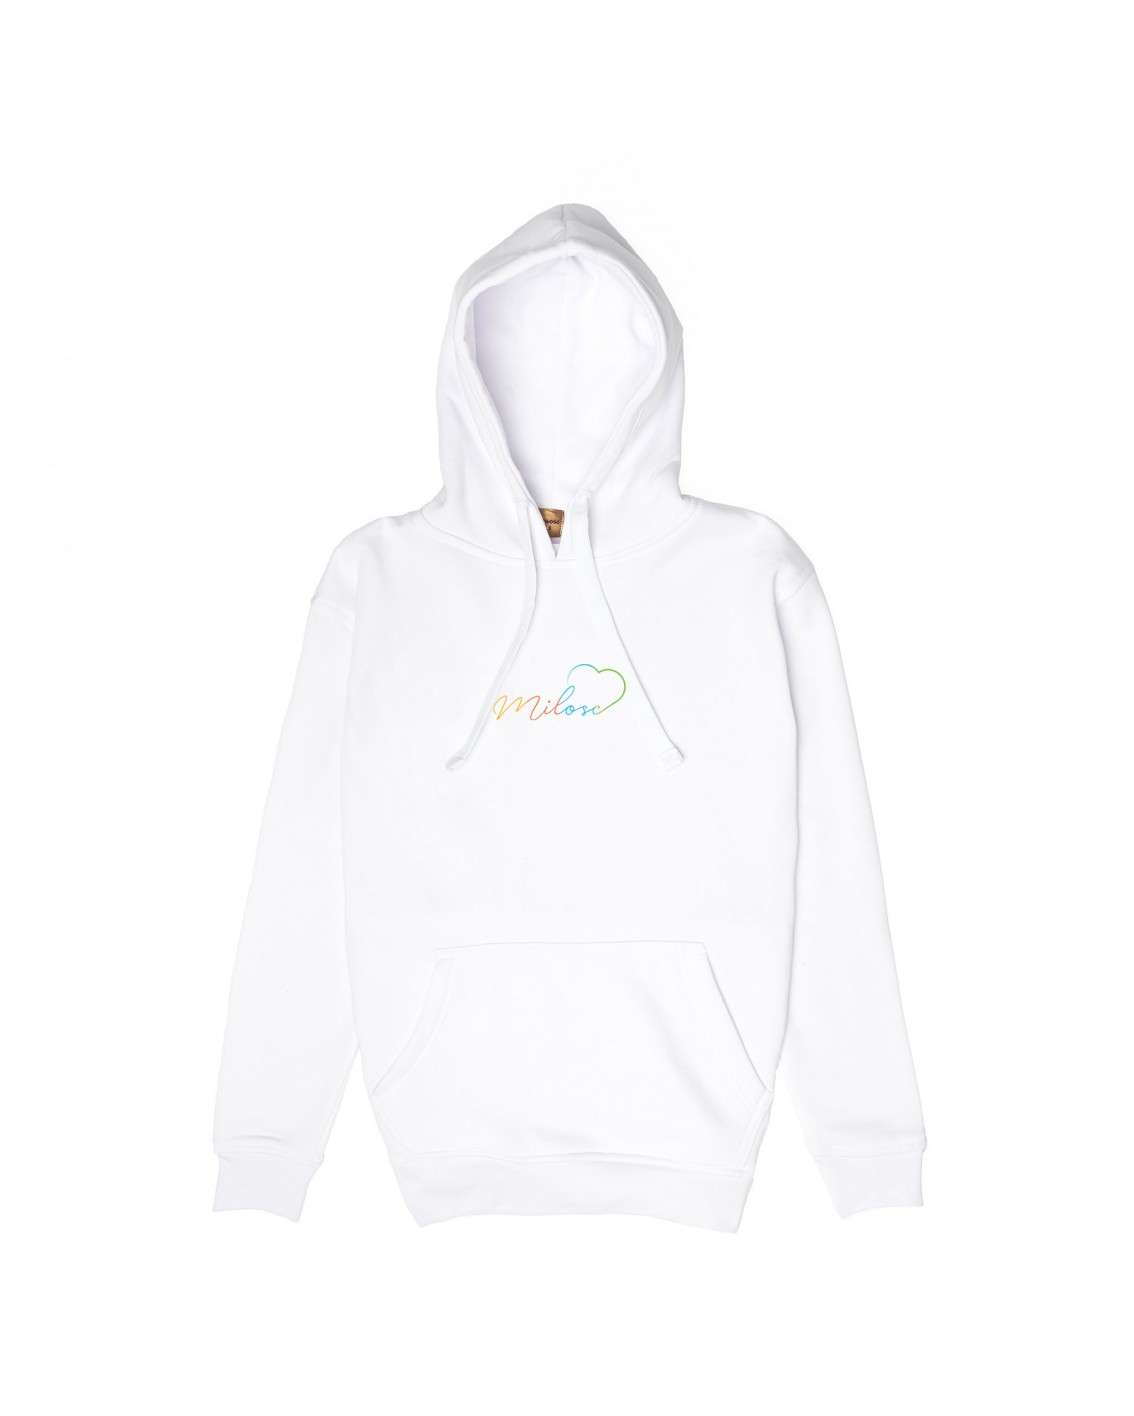 Nowość! hoodie biała z nowym logo tęczowym Miło(ść)